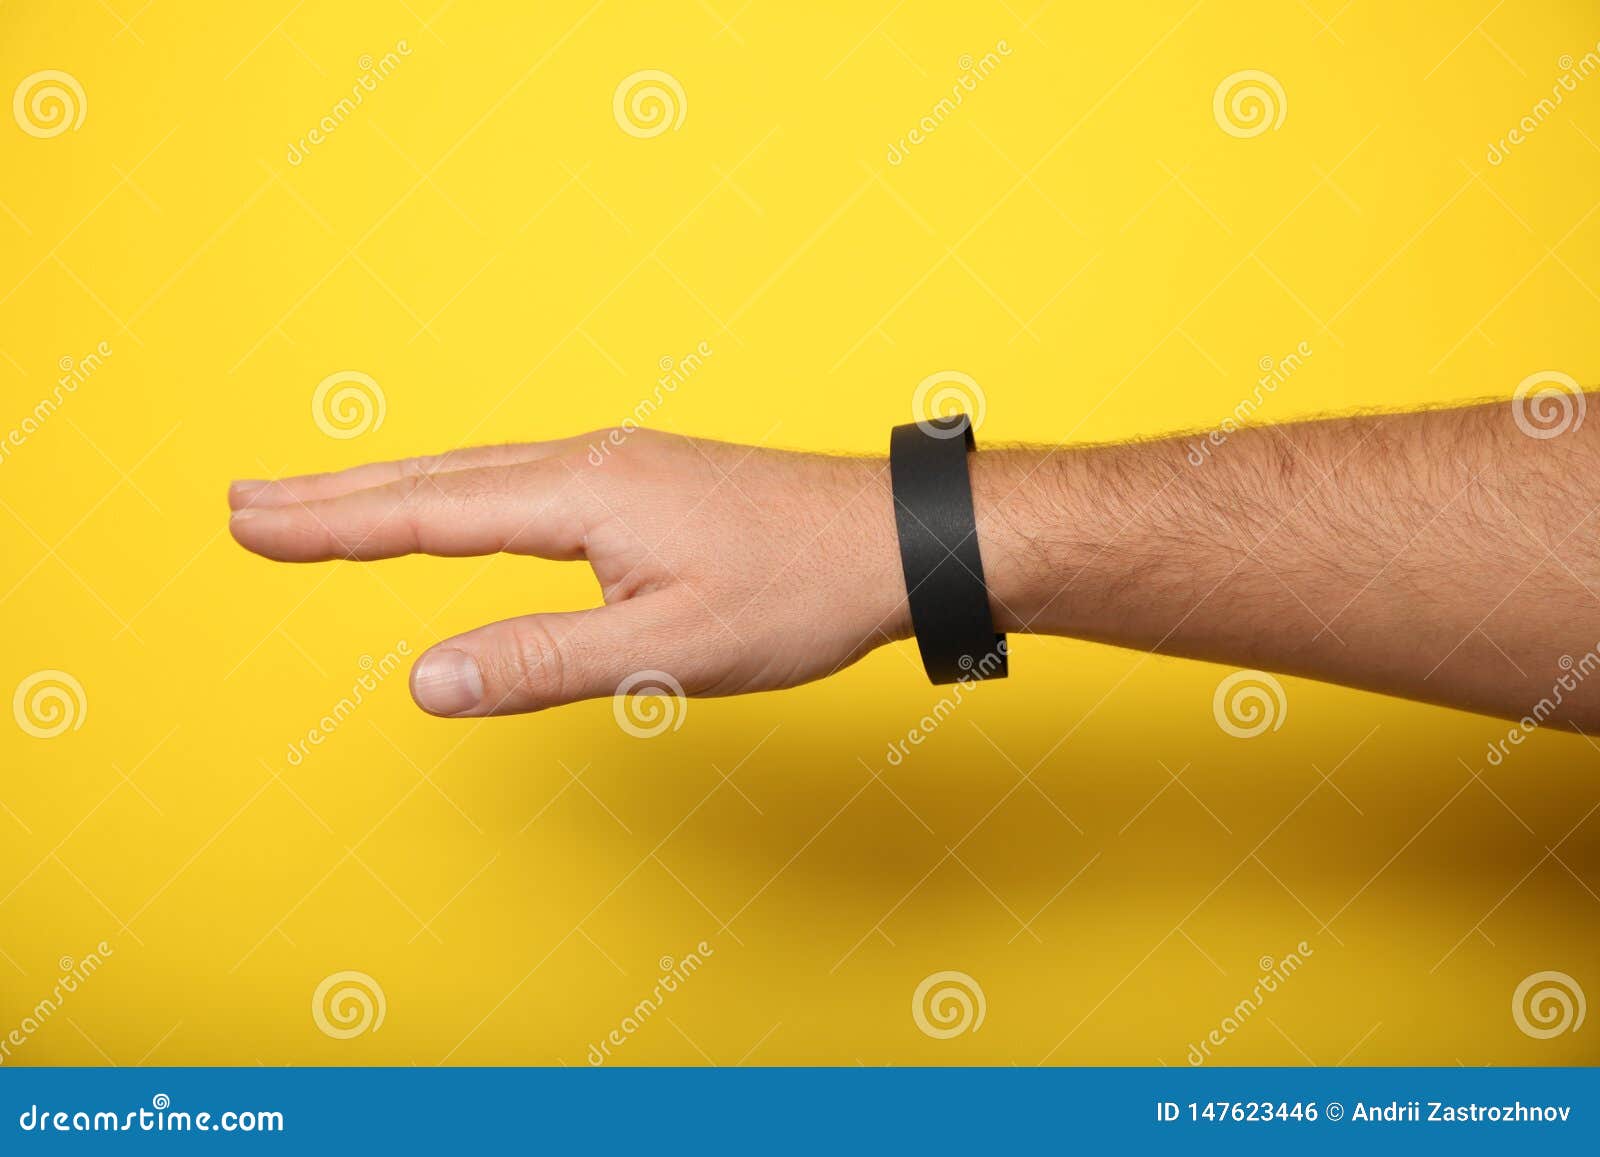 Download Paper Event Black Bracelet Mockup, Wristband Design ...